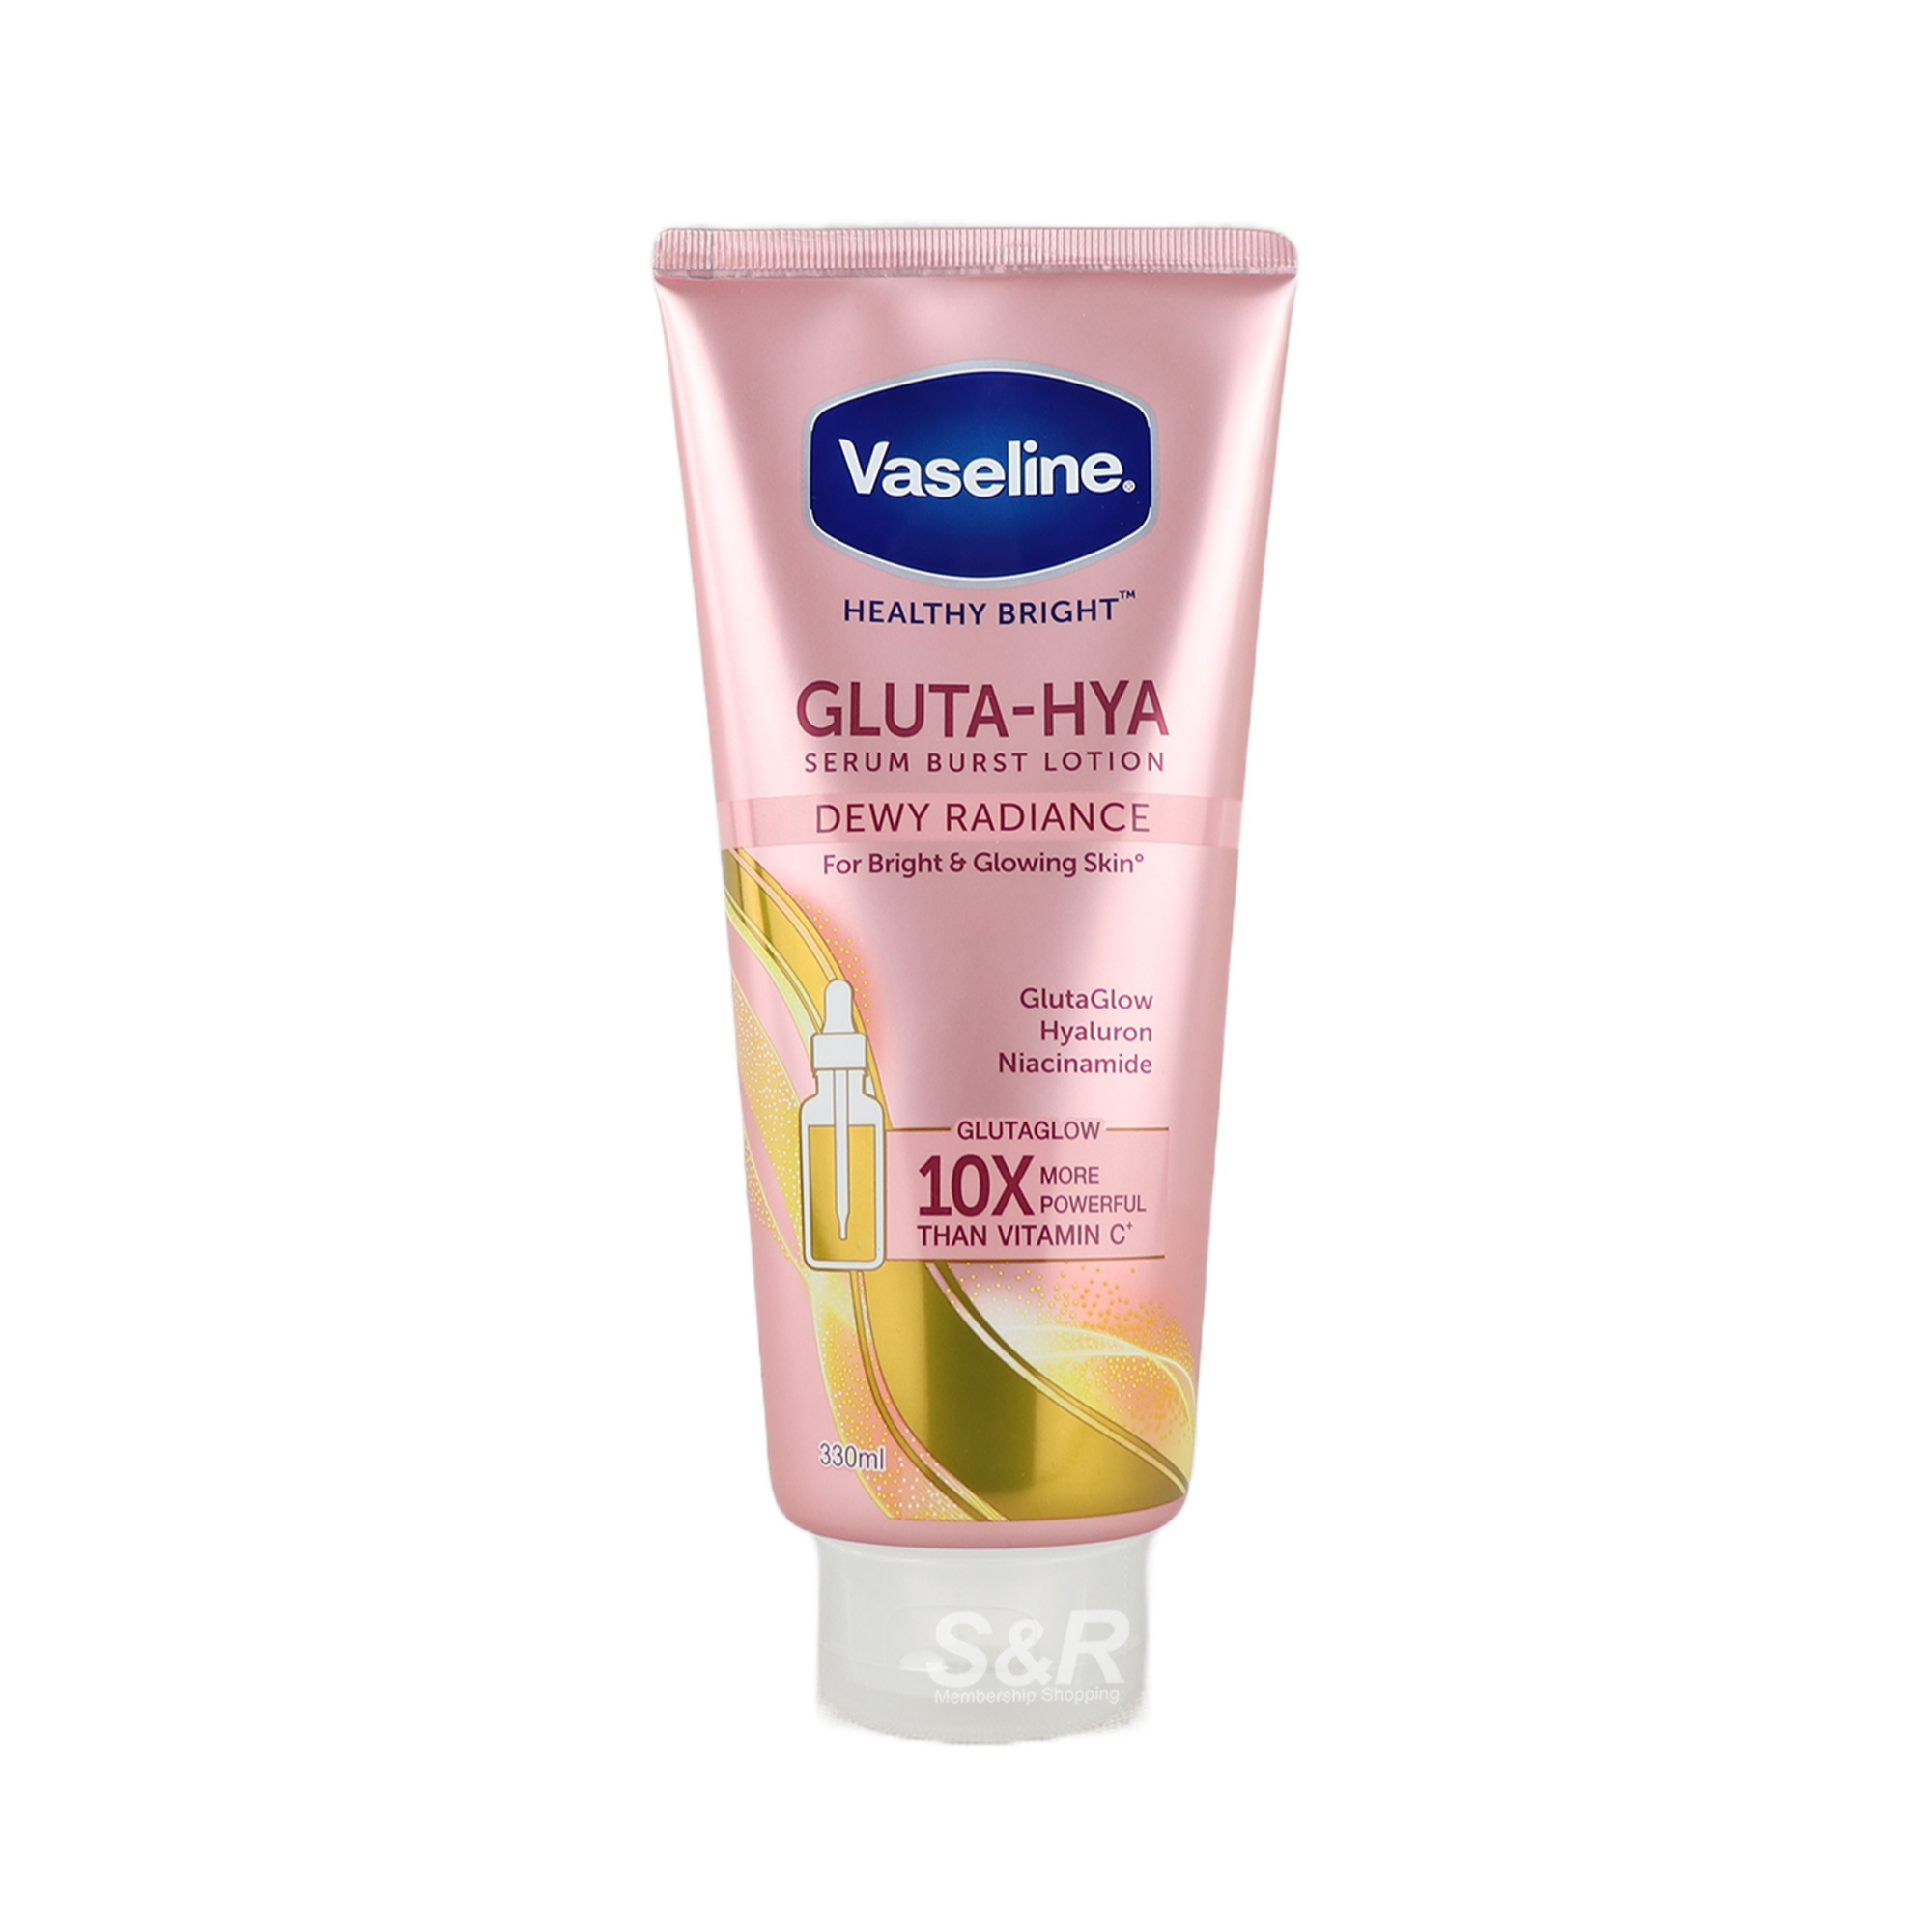 Vaseline Healthy Bright Gluta-Hya Serum Burst Lotion 330mL